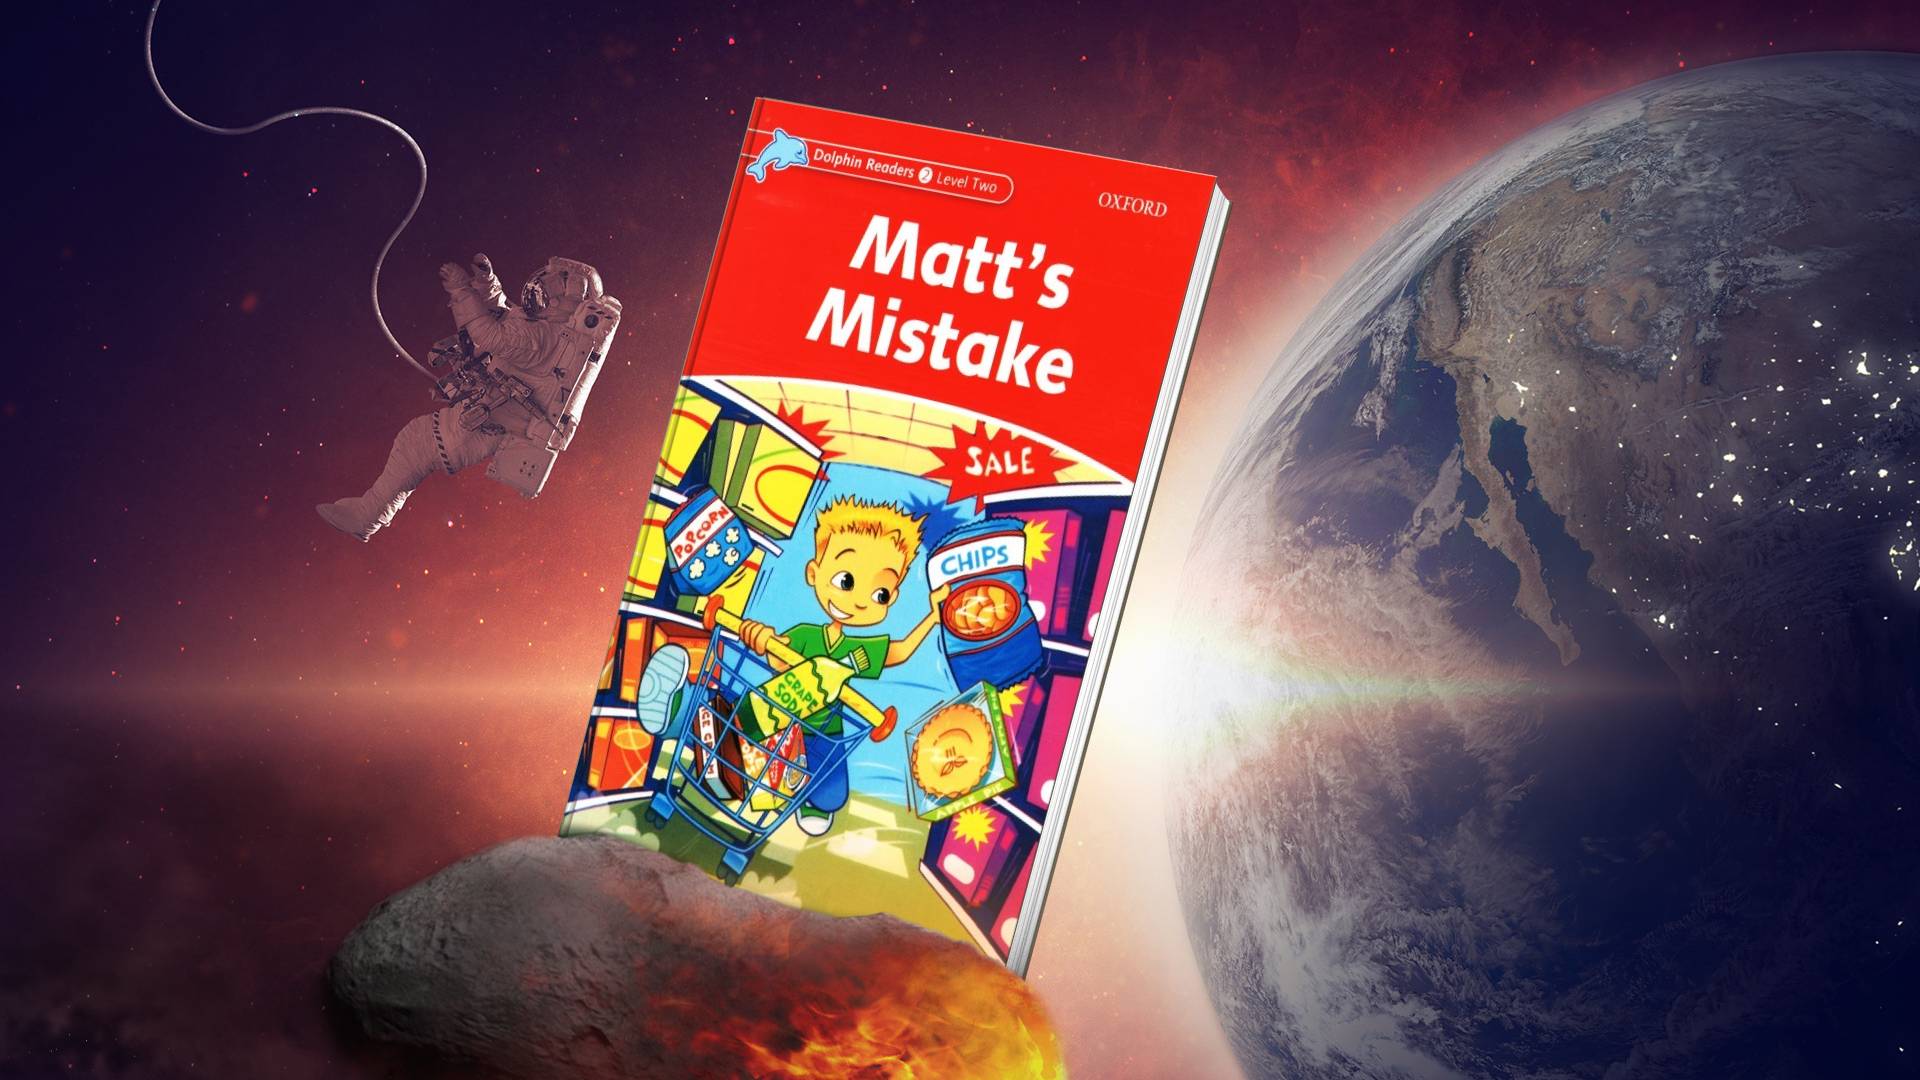 خرید کتاب زبان | فروشگاه اینترنتی کتاب زبان | Dolphin Readers 2 Level Two Matt’s Mistake | داستان دلفین ریدرز دو اشتباه مت